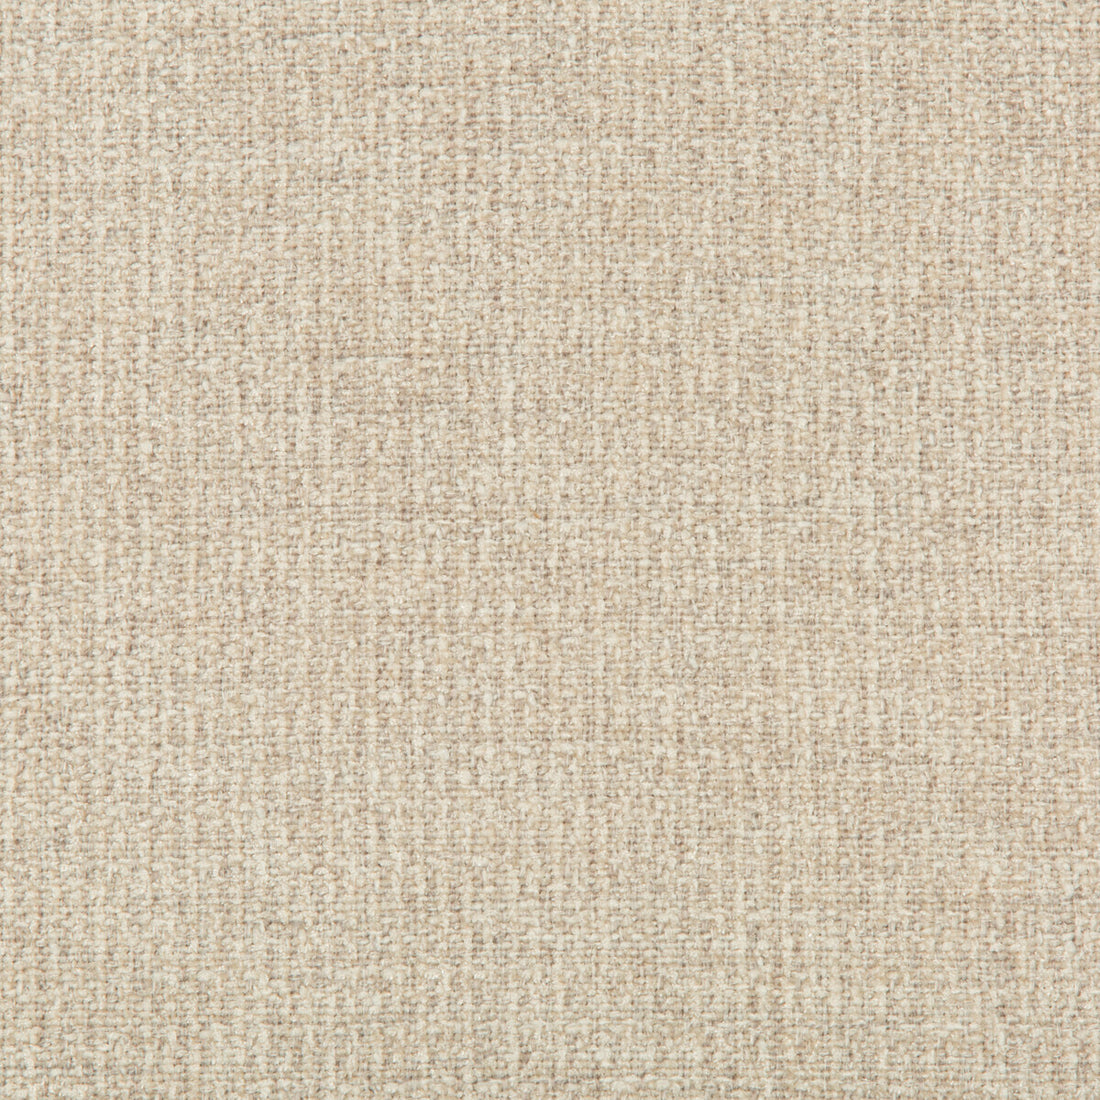 Kravet Basics fabric in 35290-16 color - pattern 35290.16.0 - by Kravet Basics